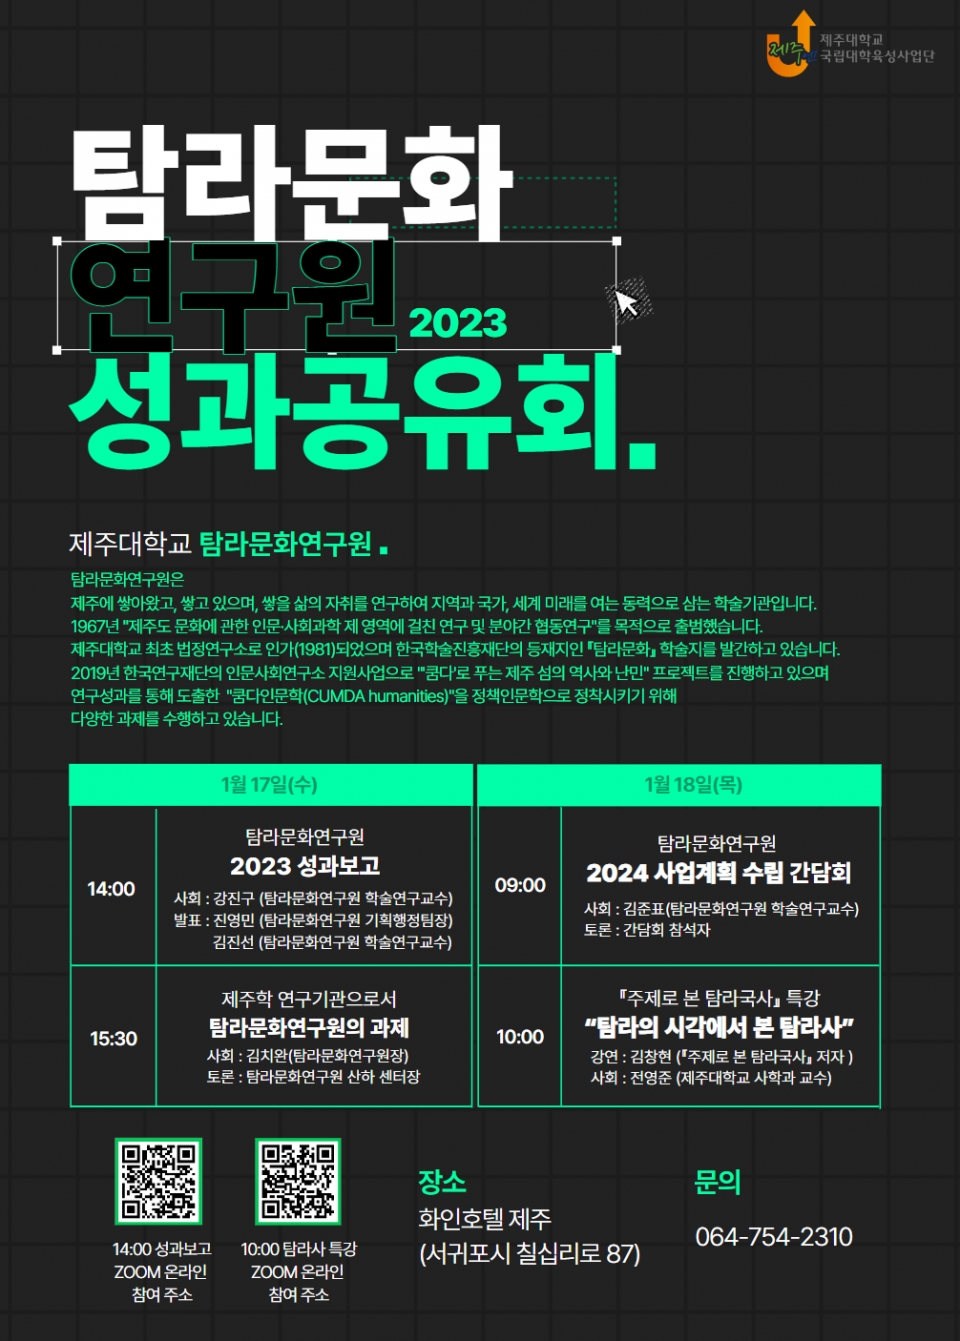 제주대 탐라문화연구원, 2023 성과공유회 개최